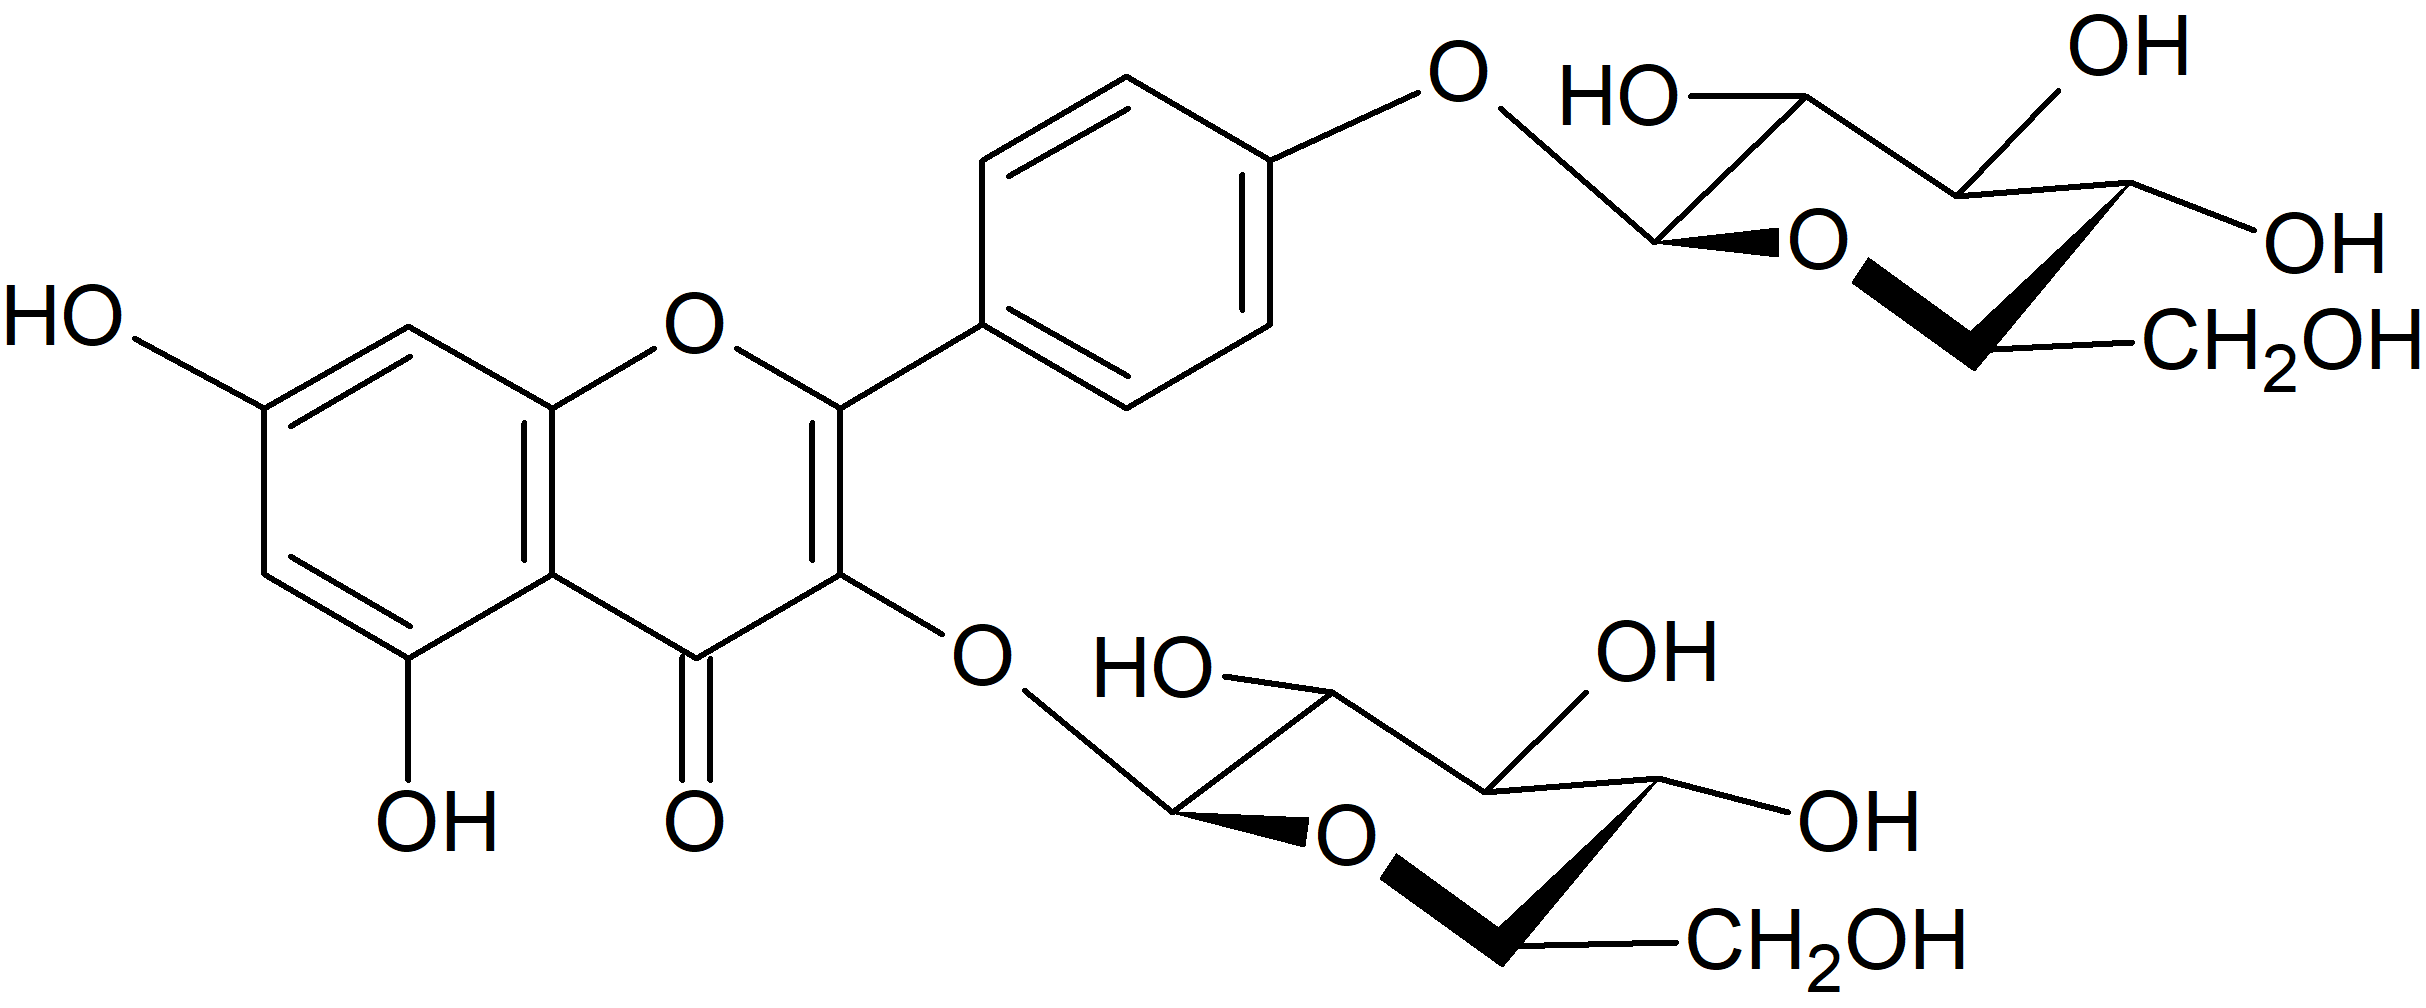 Kaempferol 3,4'-diglucoside